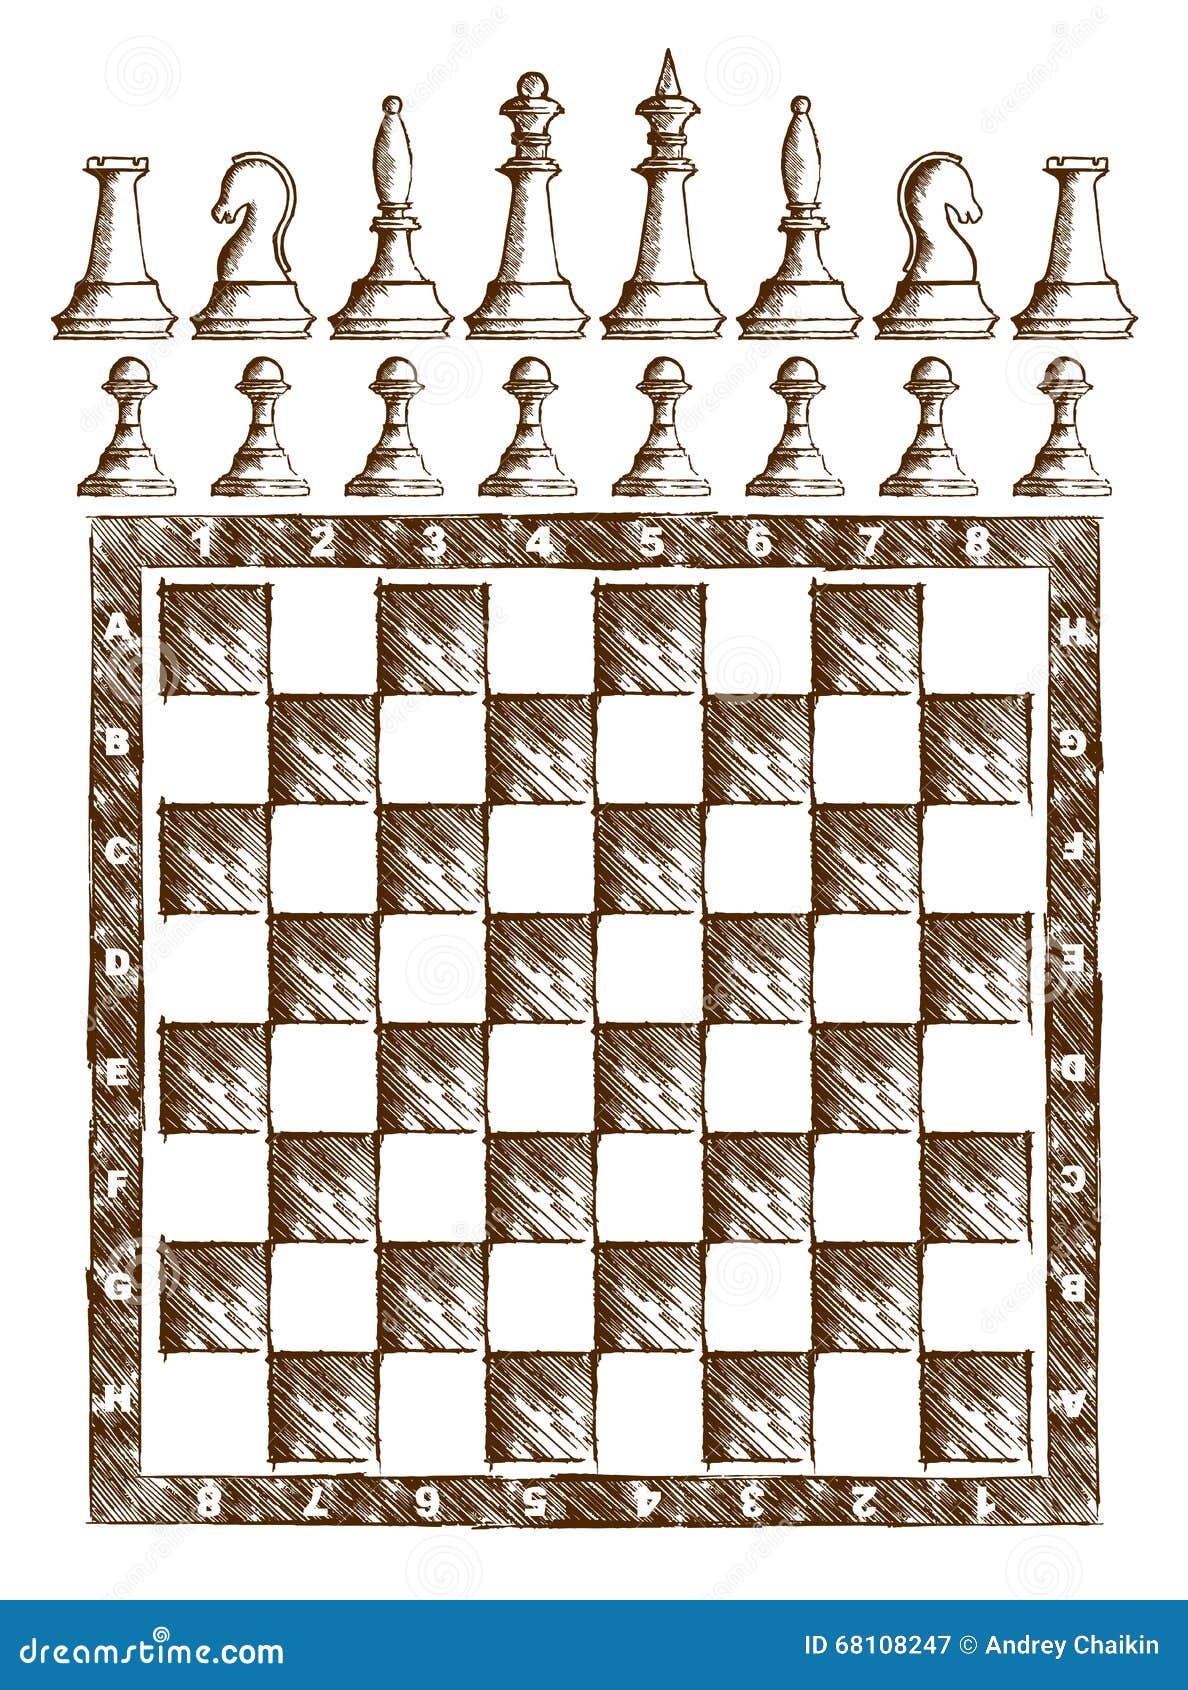 Desenho Do Tabuleiro De Xadrez Com Figuras Ilustração do Vetor